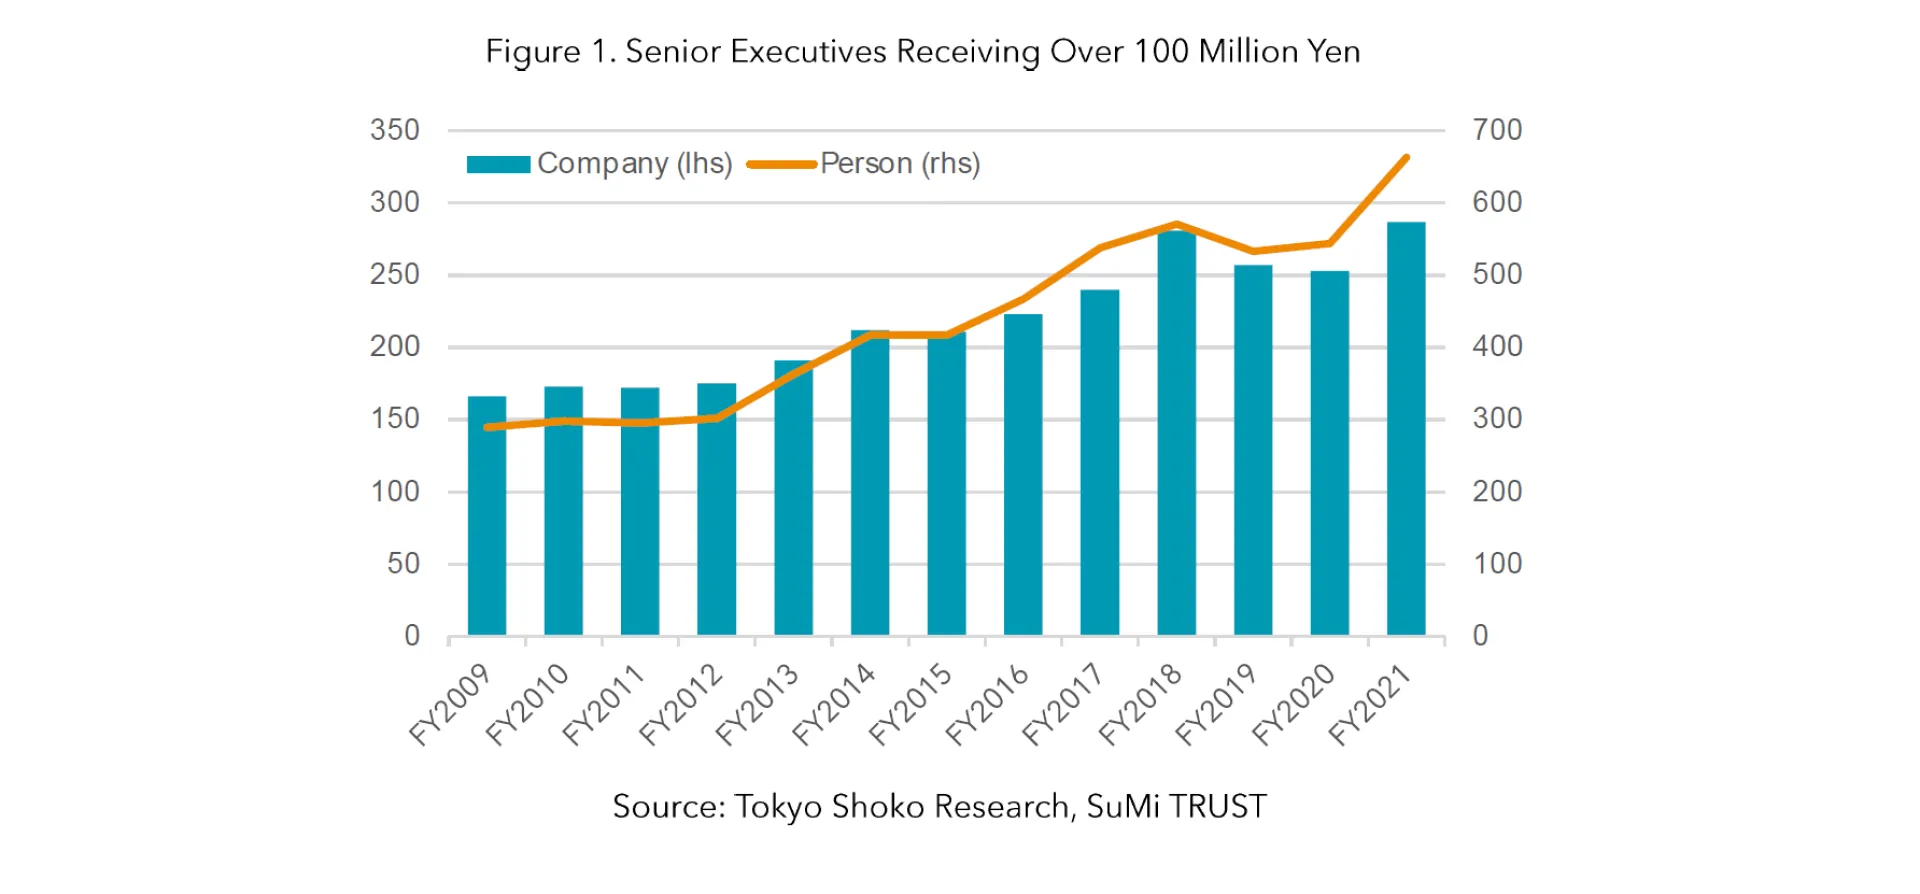 Figure 1. Senior Executives Receiving Over 100 Million Yen